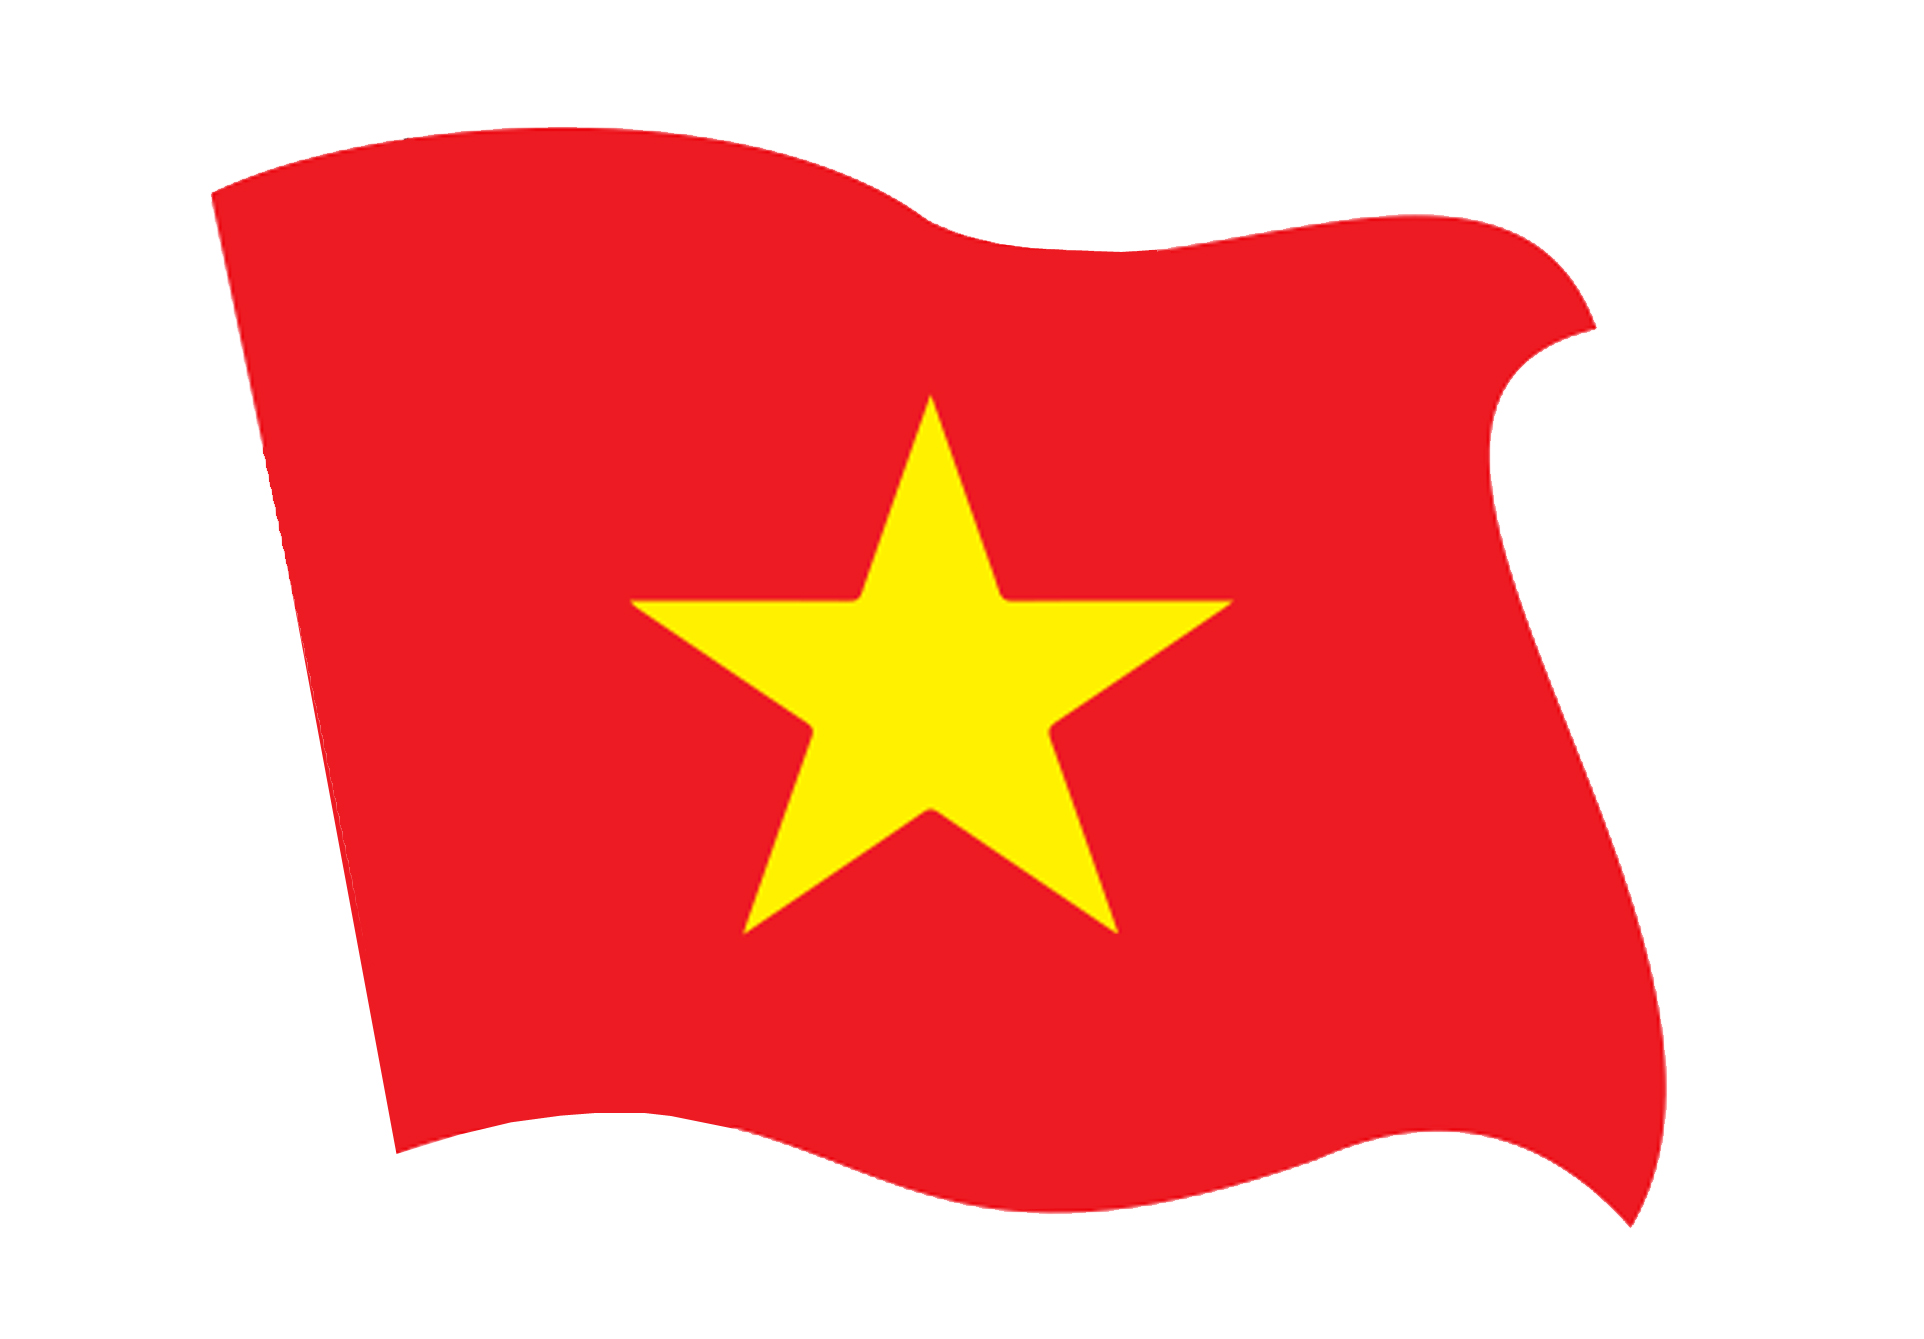 Điểm xuyến thêm màu sắc cho mùa lễ hội Quốc khánh, tem dán lá cờ Việt Nam giúp bạn thể hiện tình yêu đối với đất nước cùng cộng đồng. Với thiết kế mới, đẹp mắt và dễ sử dụng, bạn có thể dán tem ở bất kỳ nơi đâu, trên xe, xe đạp, cốc nước, thậm chí là trang phục đấy. Hãy thử ngay và truyền cảm hứng cho mọi người.